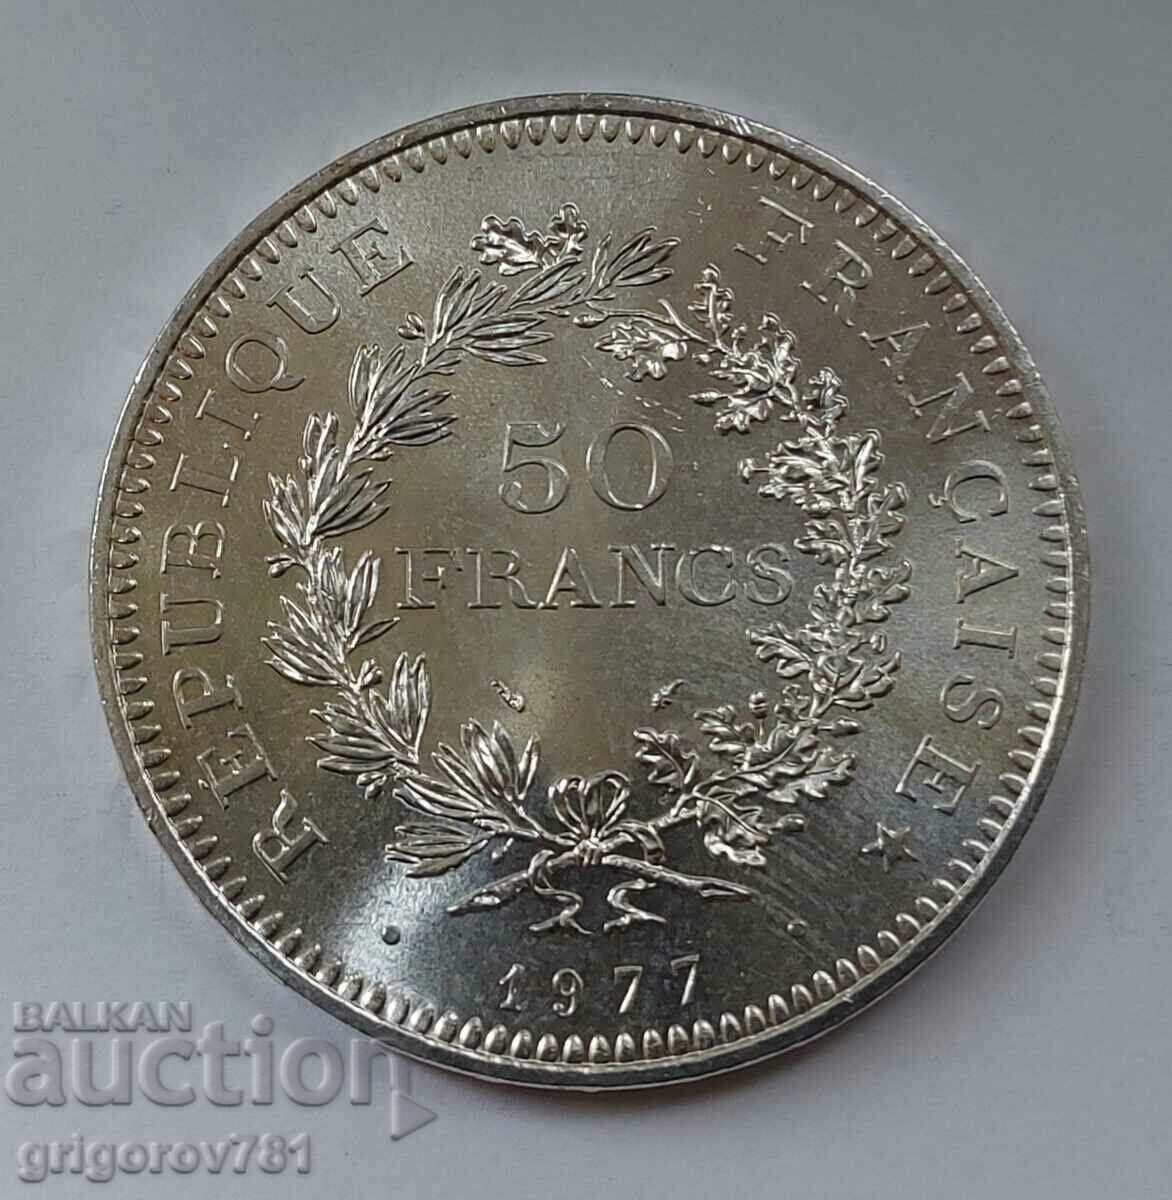 50 Franci Argint Franta 1977 - Moneda de argint #1